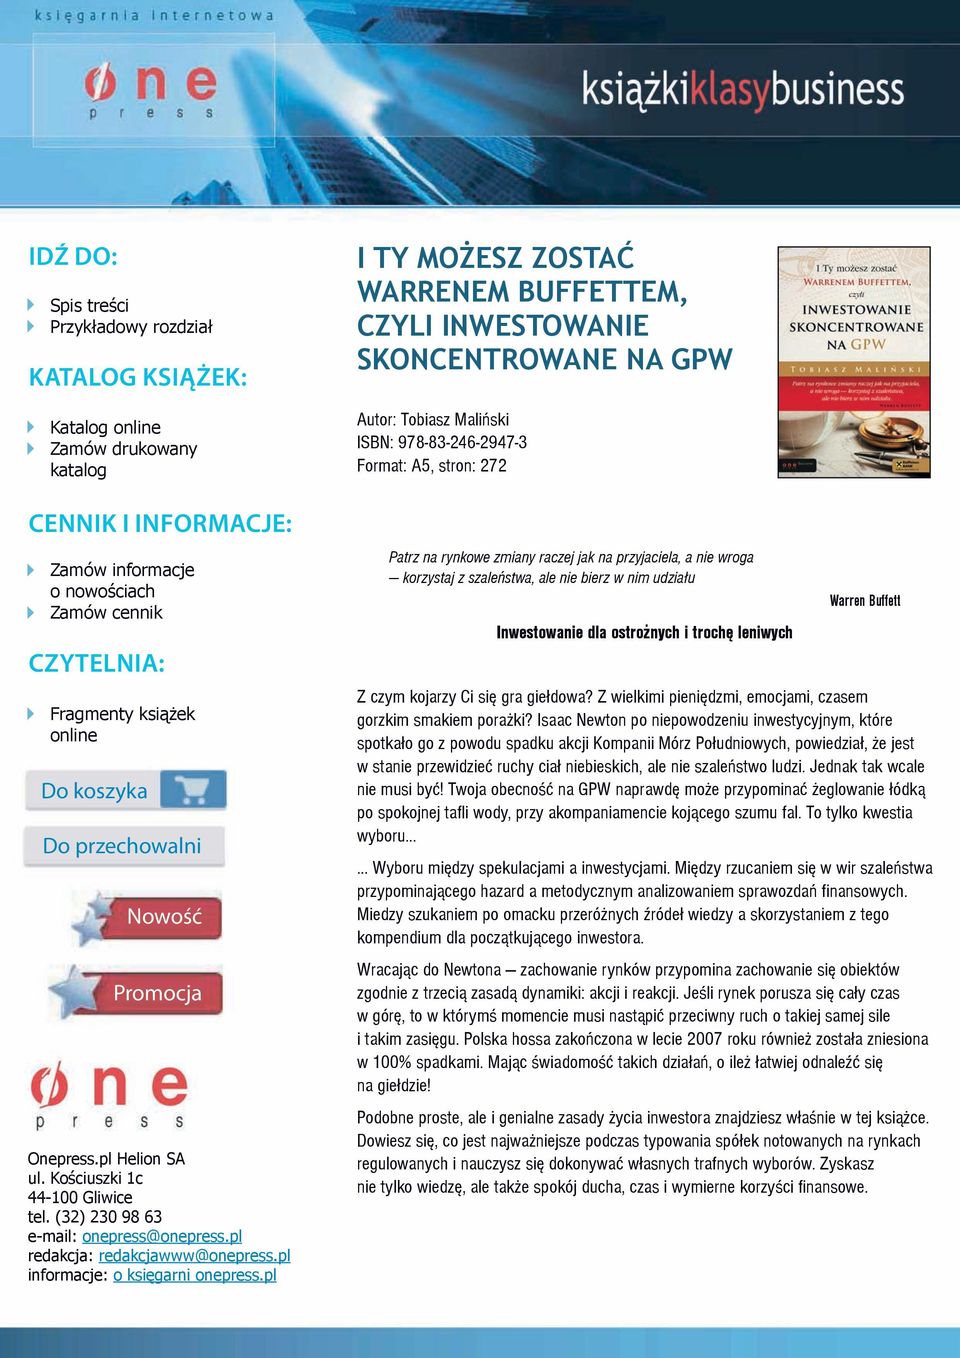 Onepress.pl Helion SA ul. Kościuszki 1c 44-100 Gliwice tel. (32) 230 98 63 e-mail: onepress@onepress.pl redakcja: redakcjawww@onepress.pl informacje: o księgarni onepress.